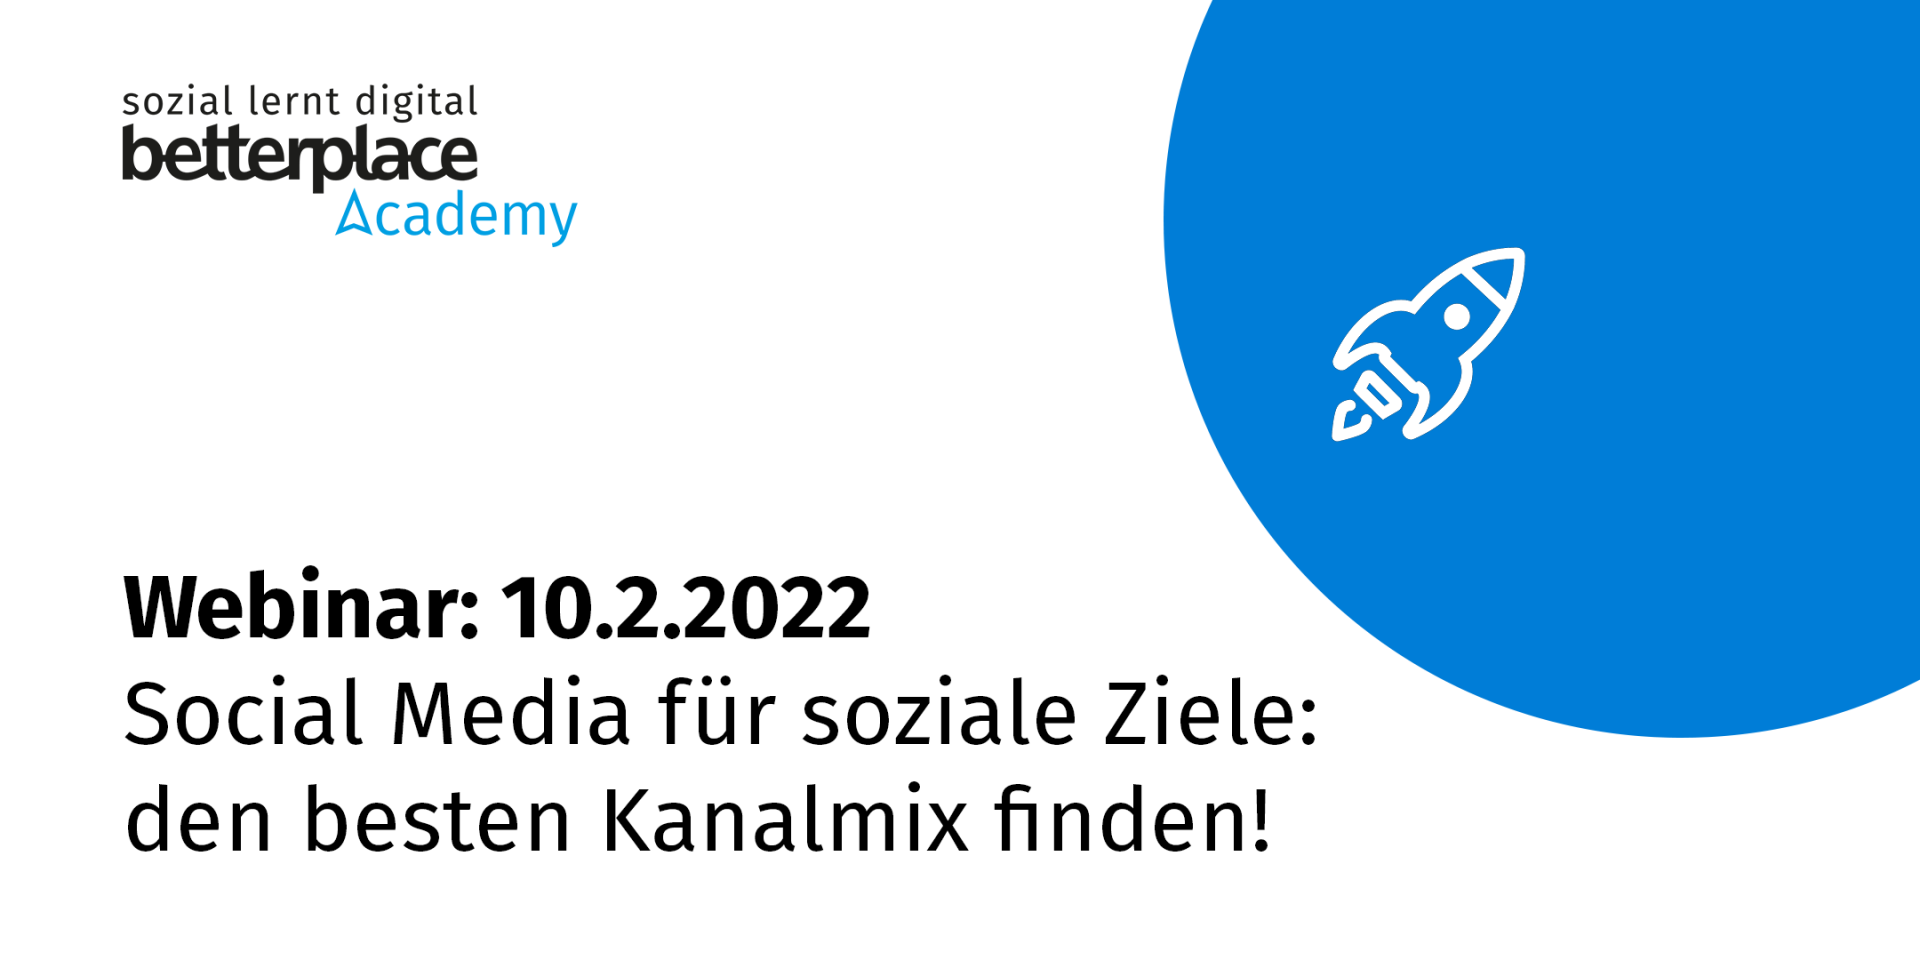 Blauer Planet mit weißer Rakete und Logo der betterplace academy sowie Text: Webinar am 10.2.2022 zu Social Media